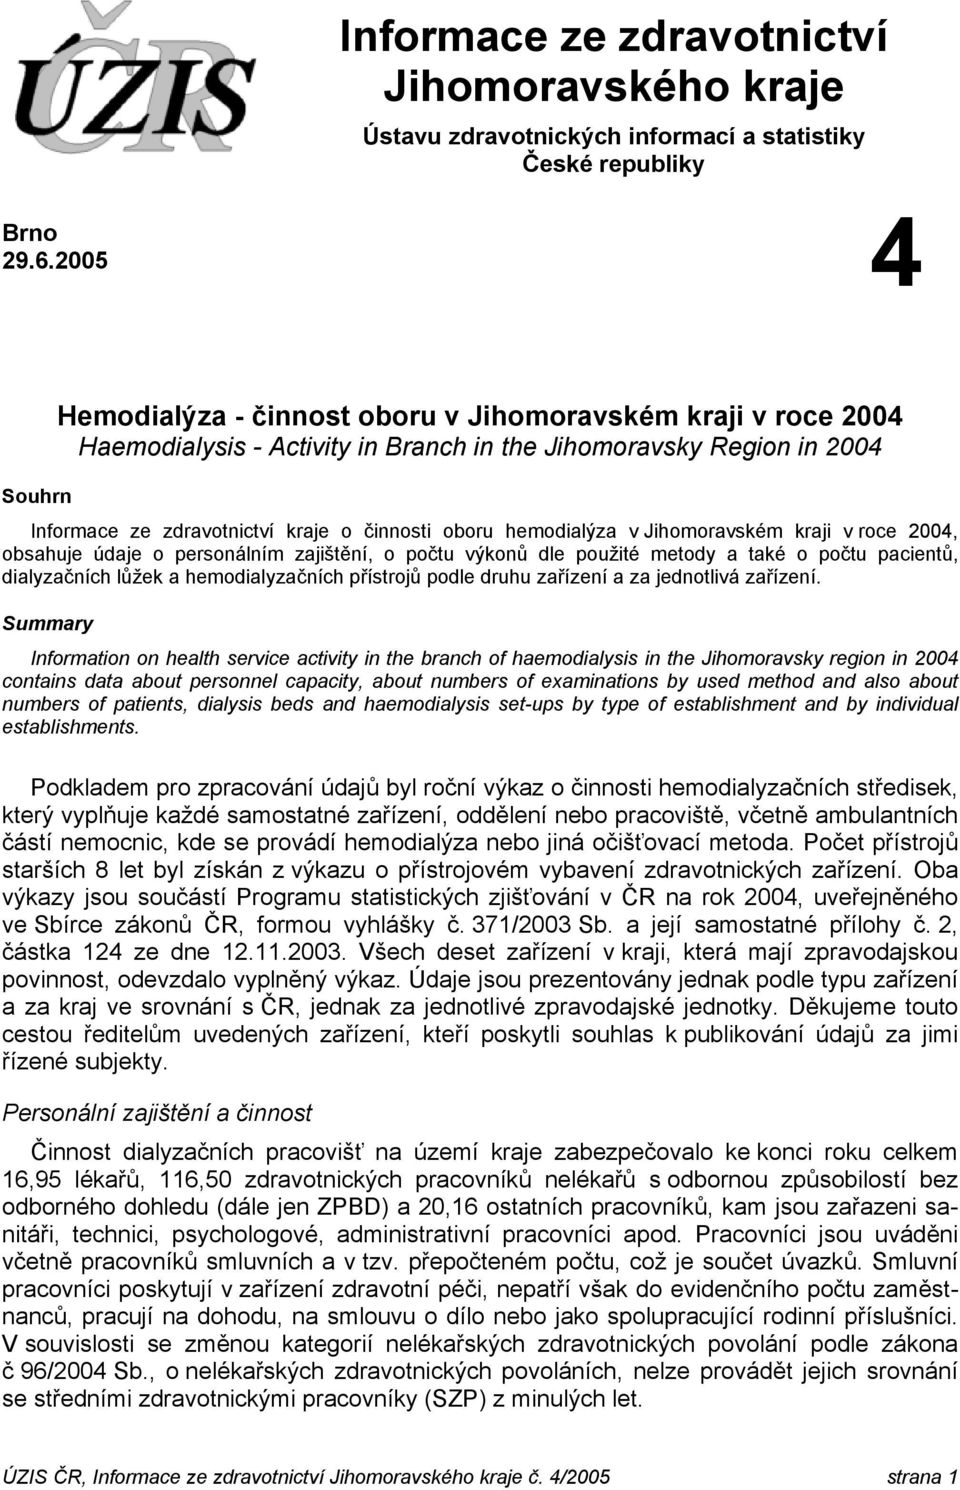 hemodialýza v Jihomoravském kraji v roce 2004, obsahuje údaje o personálním zajištění, o počtu výkonů dle použité metody a také o počtu pacientů, dialyzačních lůžek a hemodialyzačních přístrojů podle